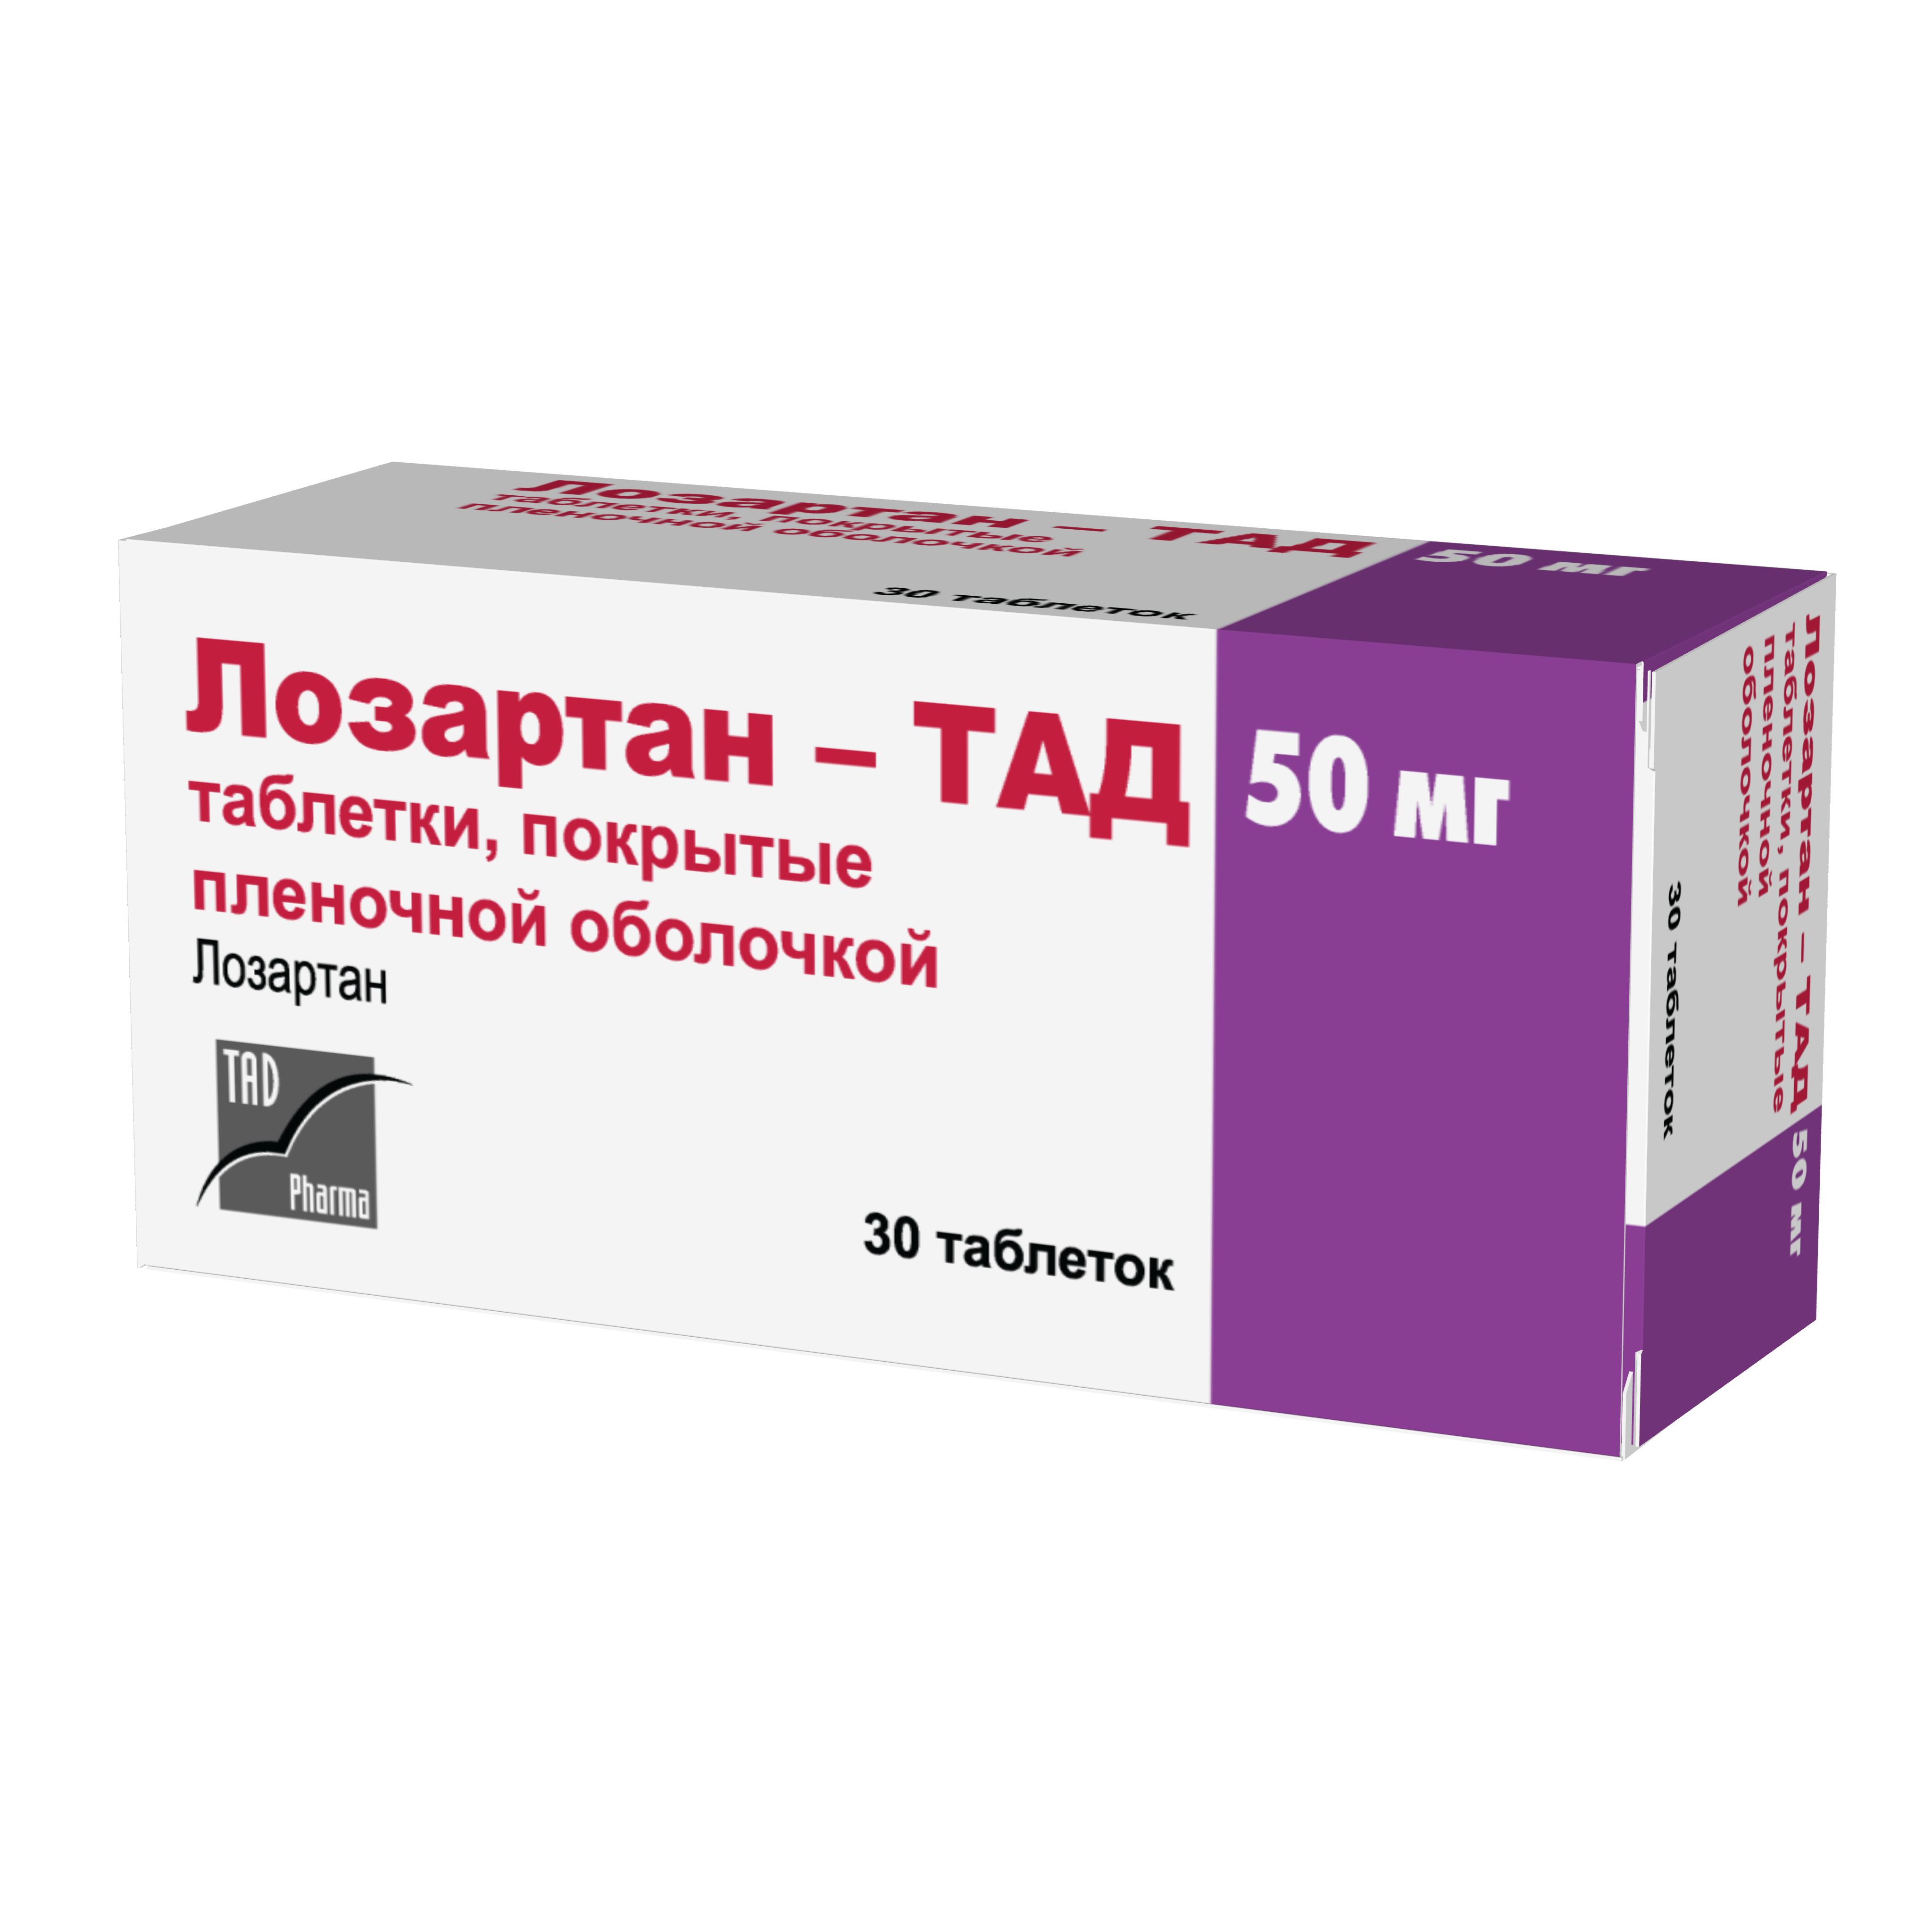 Лозартан-ТАД 50 мг таблетки, покрытые плёночной оболочкой | Krka